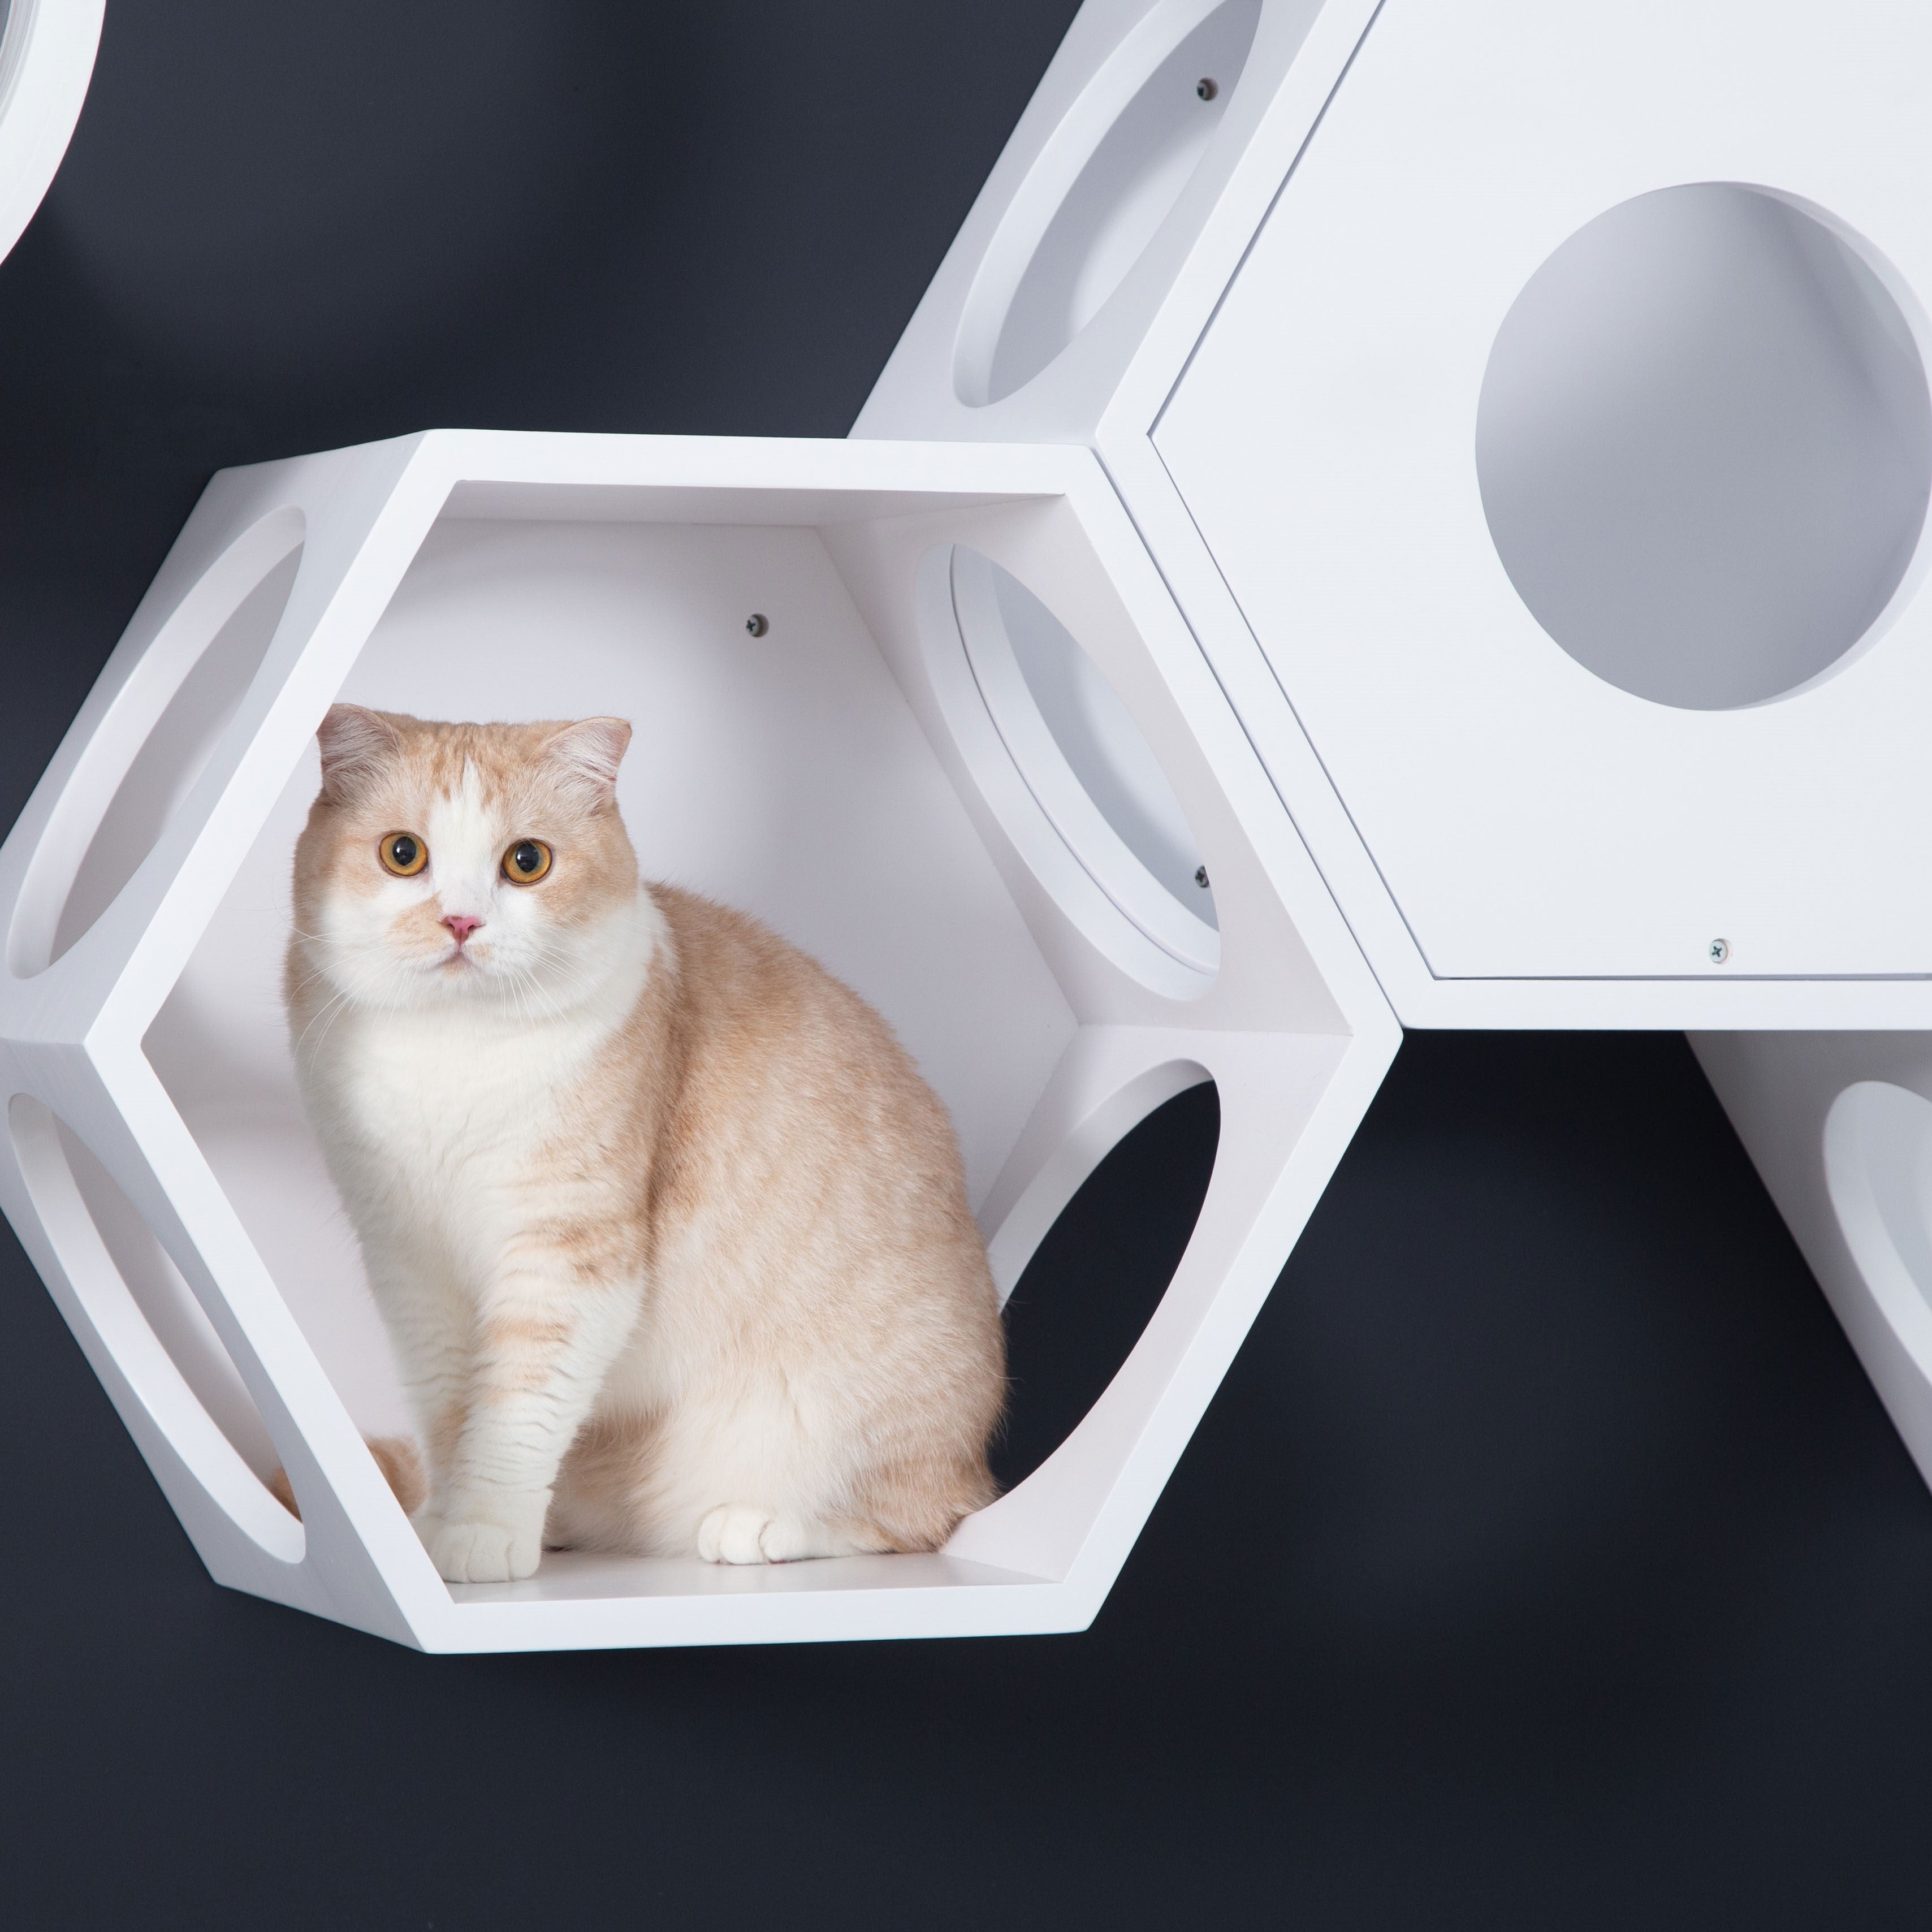 パイン無垢材で作られた壁掛けタイプのキャットタワー。ホワイトの六角形で四面に穴を開けているので、猫は好きな場所から出入りができます。複数繋げることにより、トンネルのようなキャッ